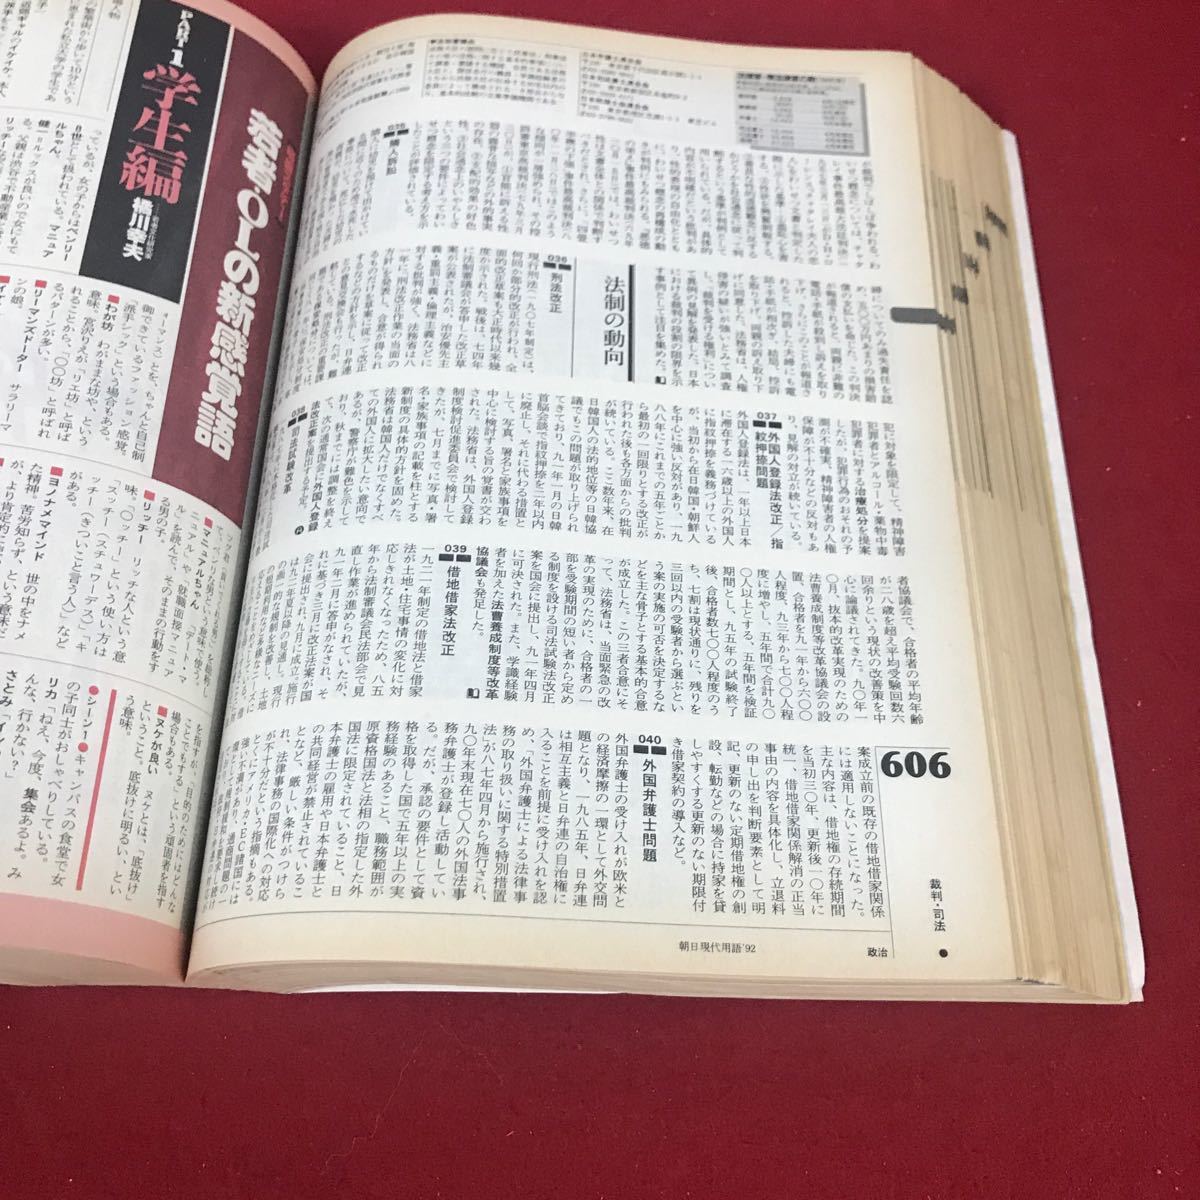 h-317※12 朝日現代用語 知恵蔵 1992 朝日新聞社_画像6